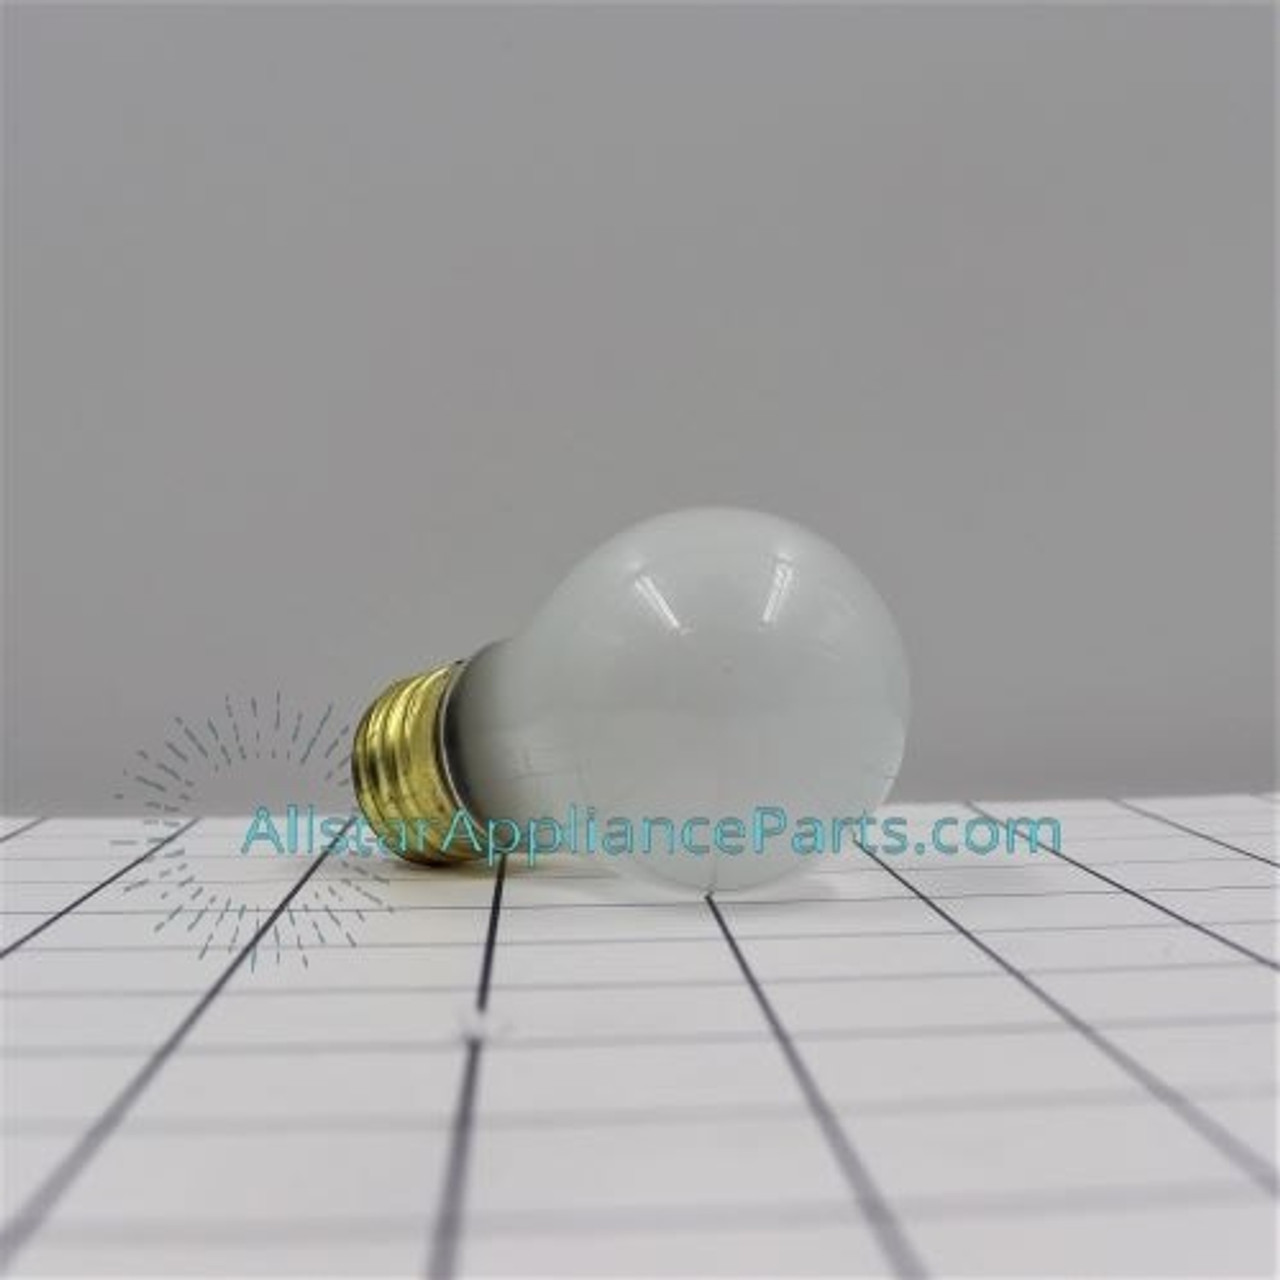 Light Bulb 5304506475  Allstar Appliance Parts